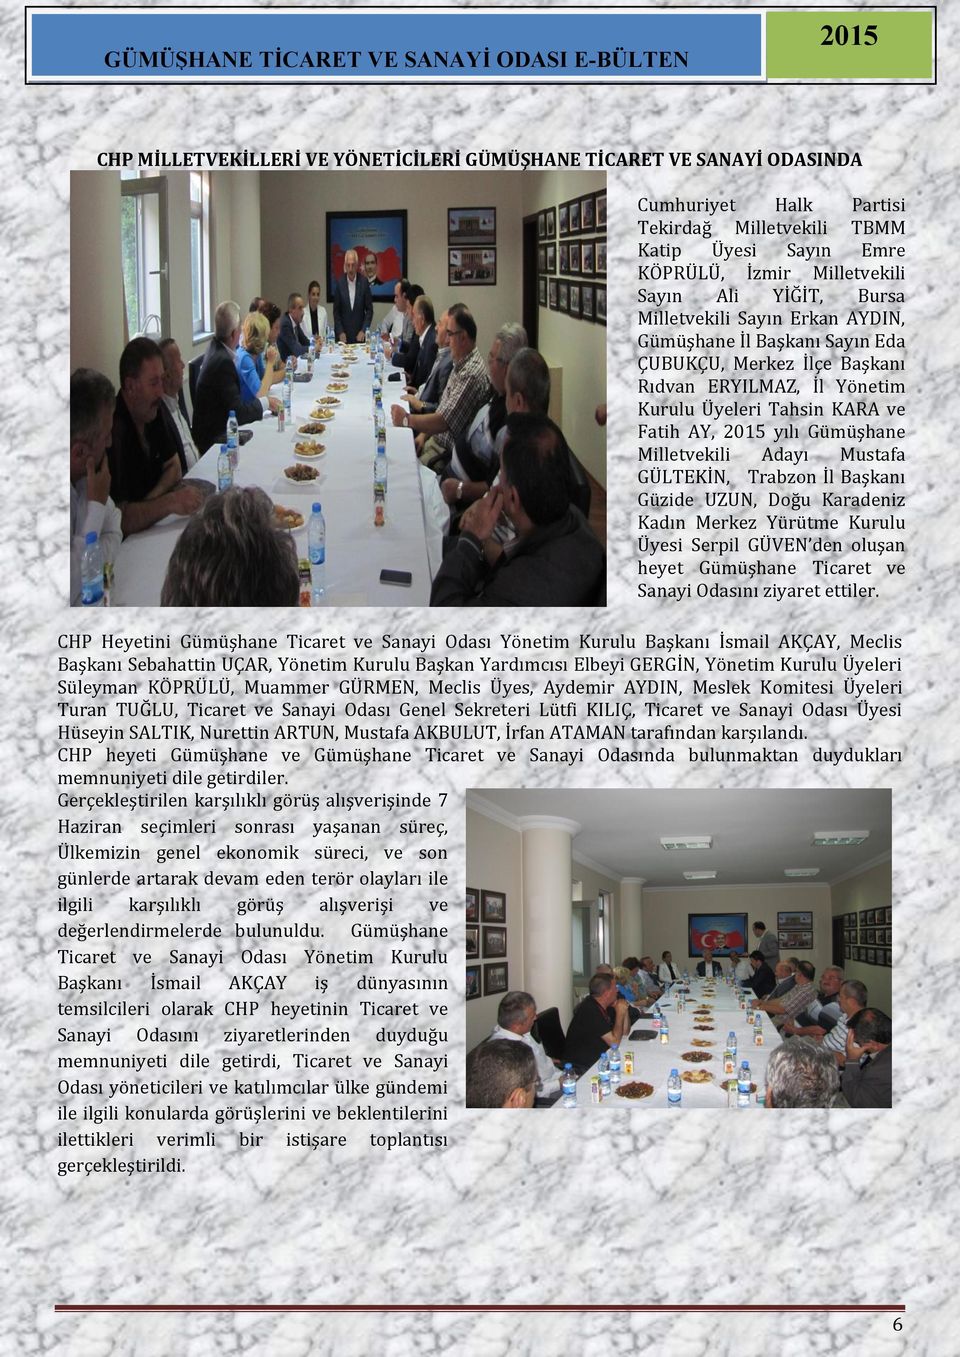 Mustafa GÜLTEKİN, Trabzon İl Başkanı Güzide UZUN, Doğu Karadeniz Kadın Merkez Yürütme Kurulu Üyesi Serpil GÜVEN den oluşan heyet Gümüşhane Ticaret ve Sanayi Odasını ziyaret ettiler.